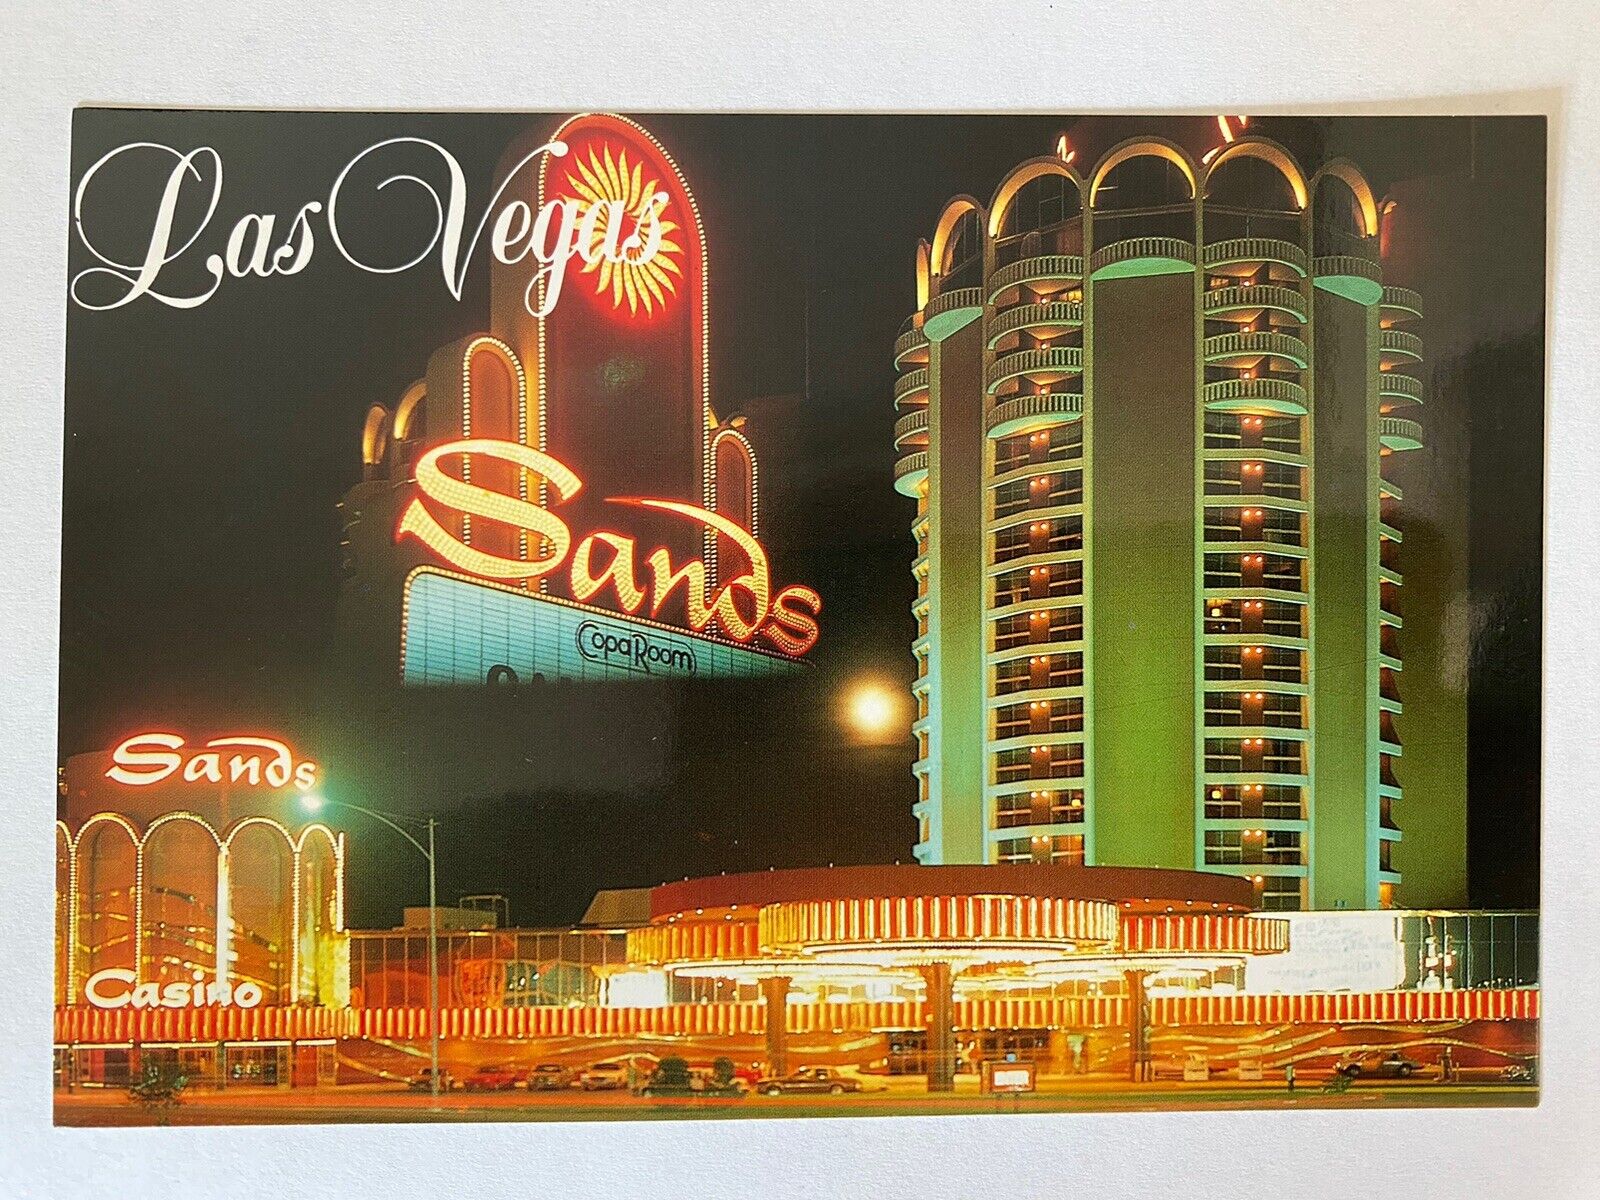 Sands Hotel Casino Las Vegas Nevada USA Vintage 1990 Unused Postcard